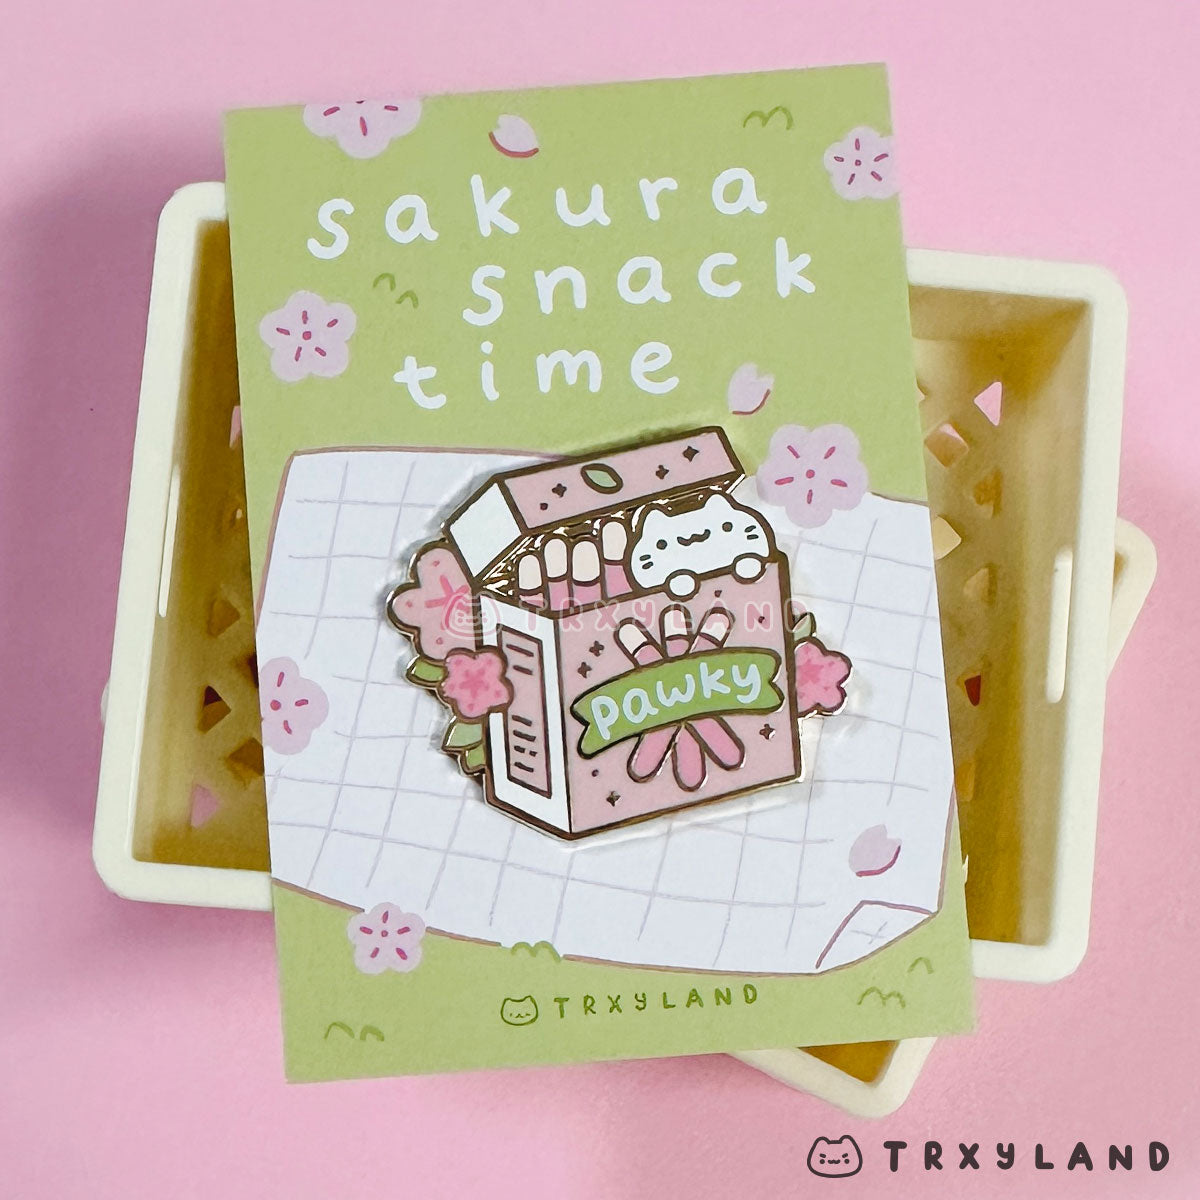 Sakura Pawky Enamel Pin